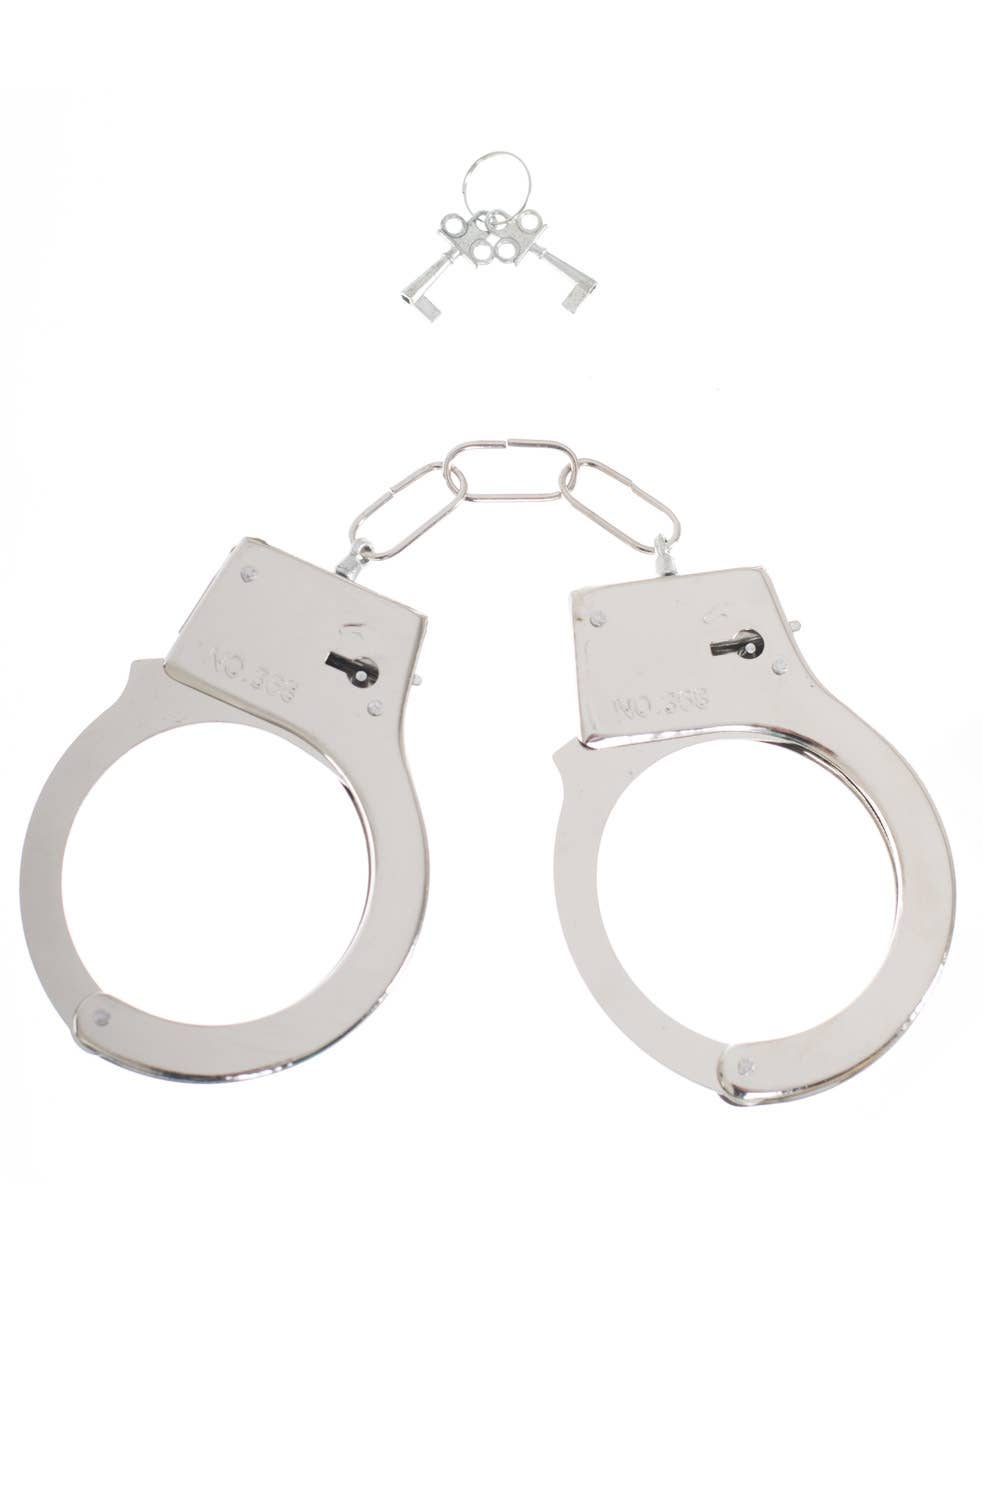 Cop Police Silver Metal Wrist Handcuff Costume Accessory